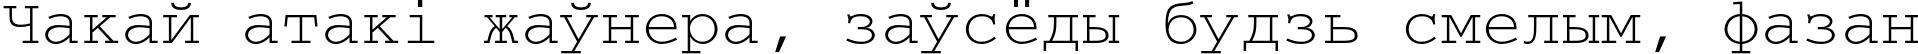 Пример написания шрифтом CourierC текста на белорусском